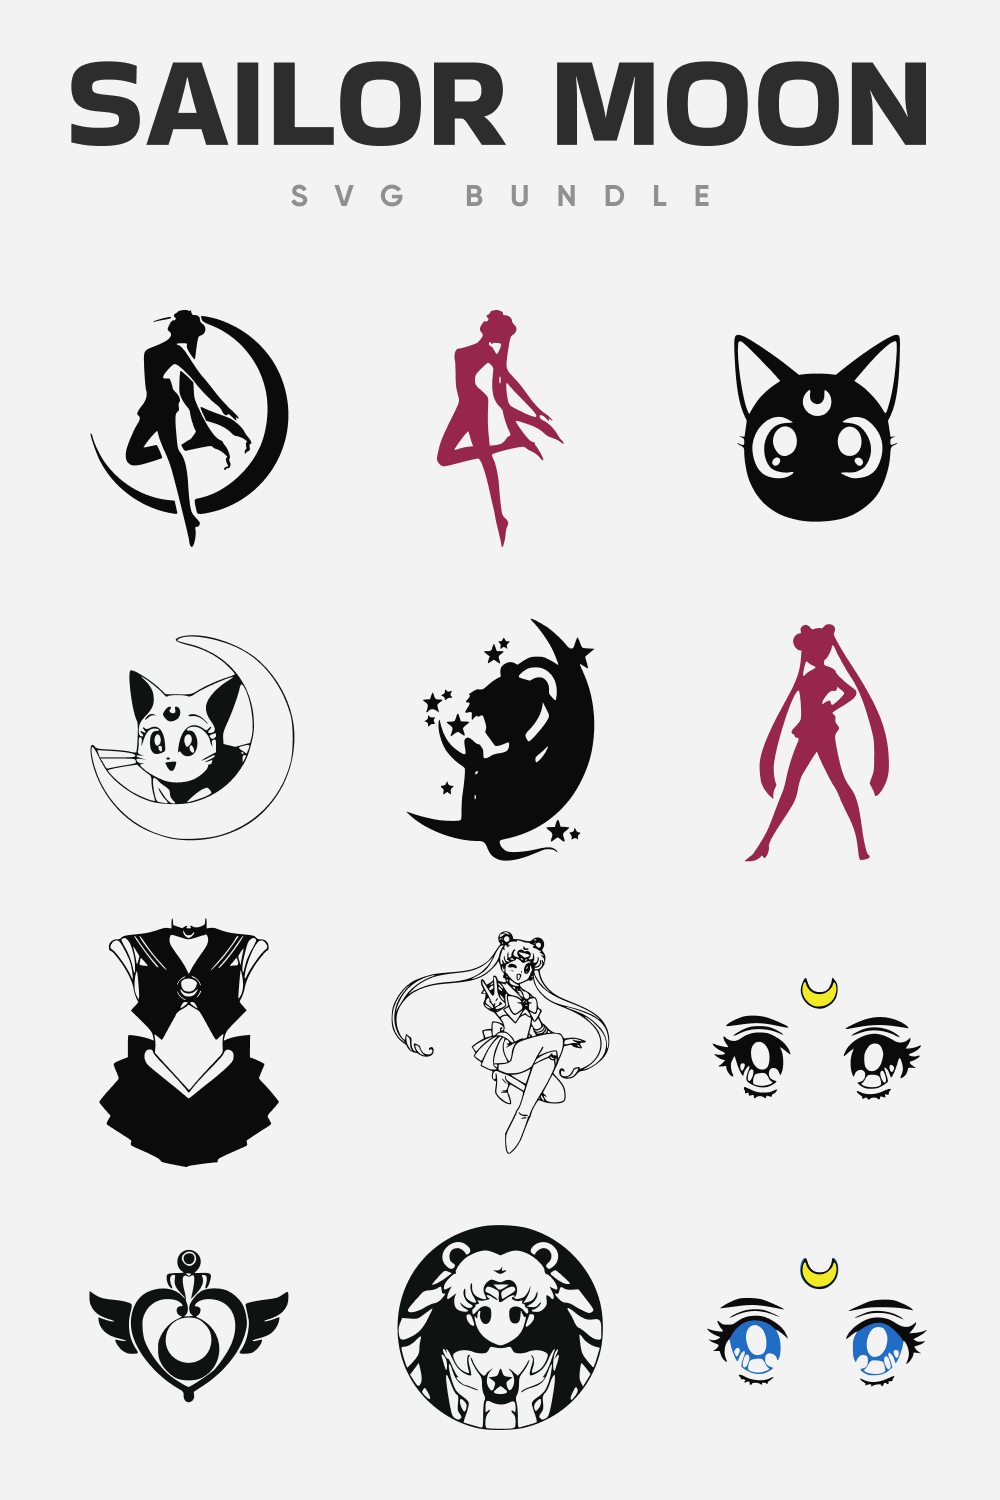 Sailor Moon SVG File - Pinterest Preview.